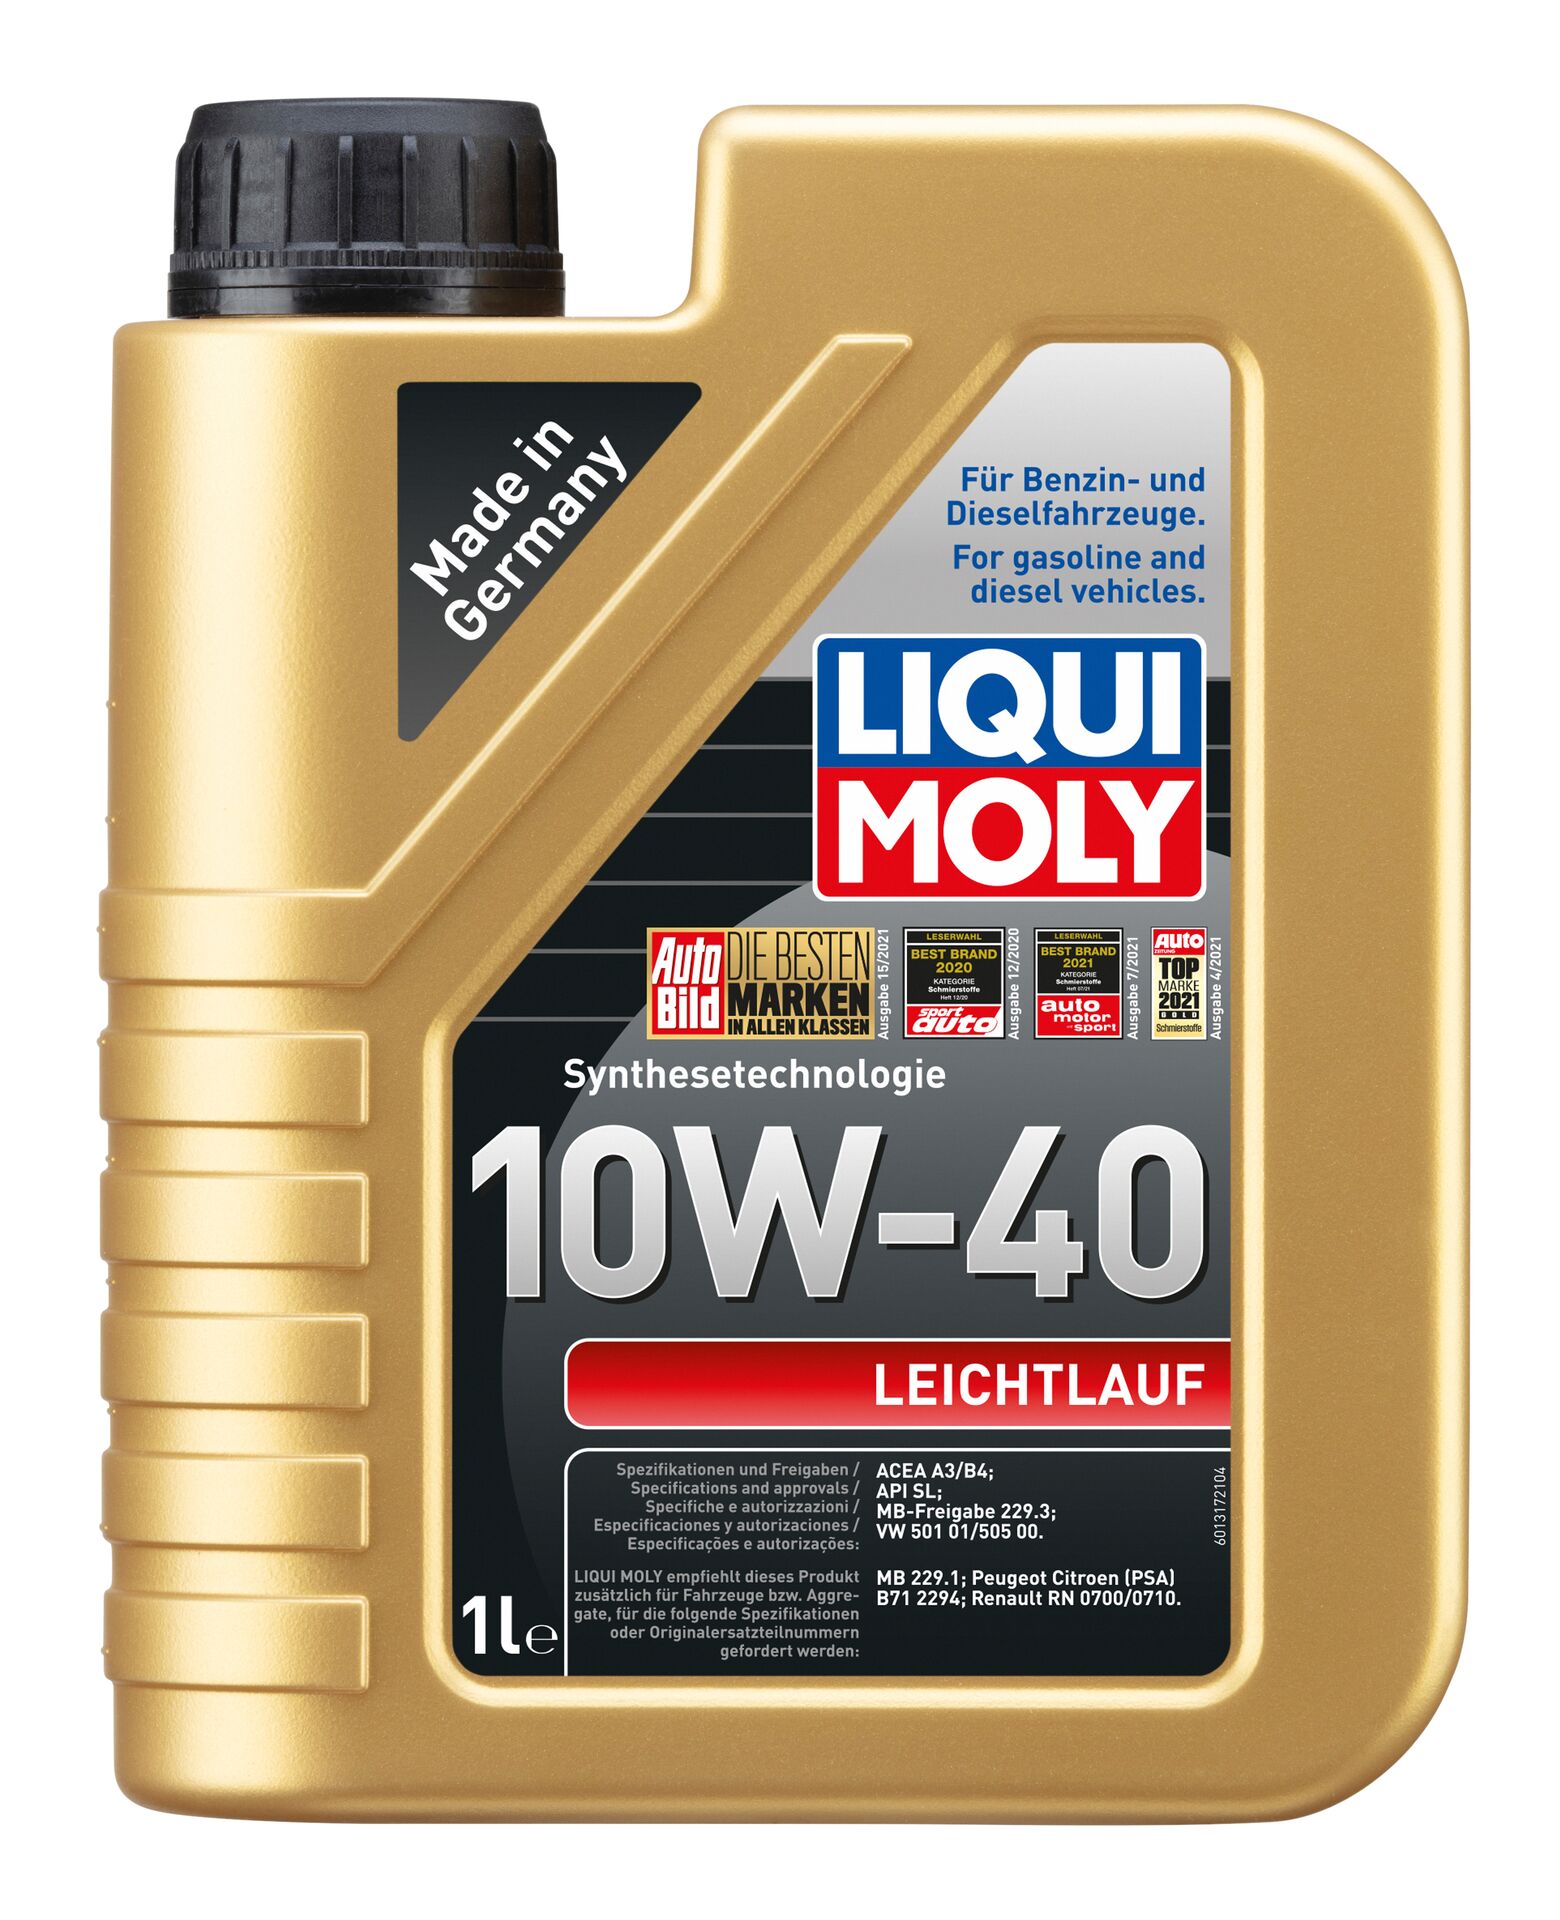 LIQUI-MOLY Motorenöl Leichtlauf 10W-40 1 l 